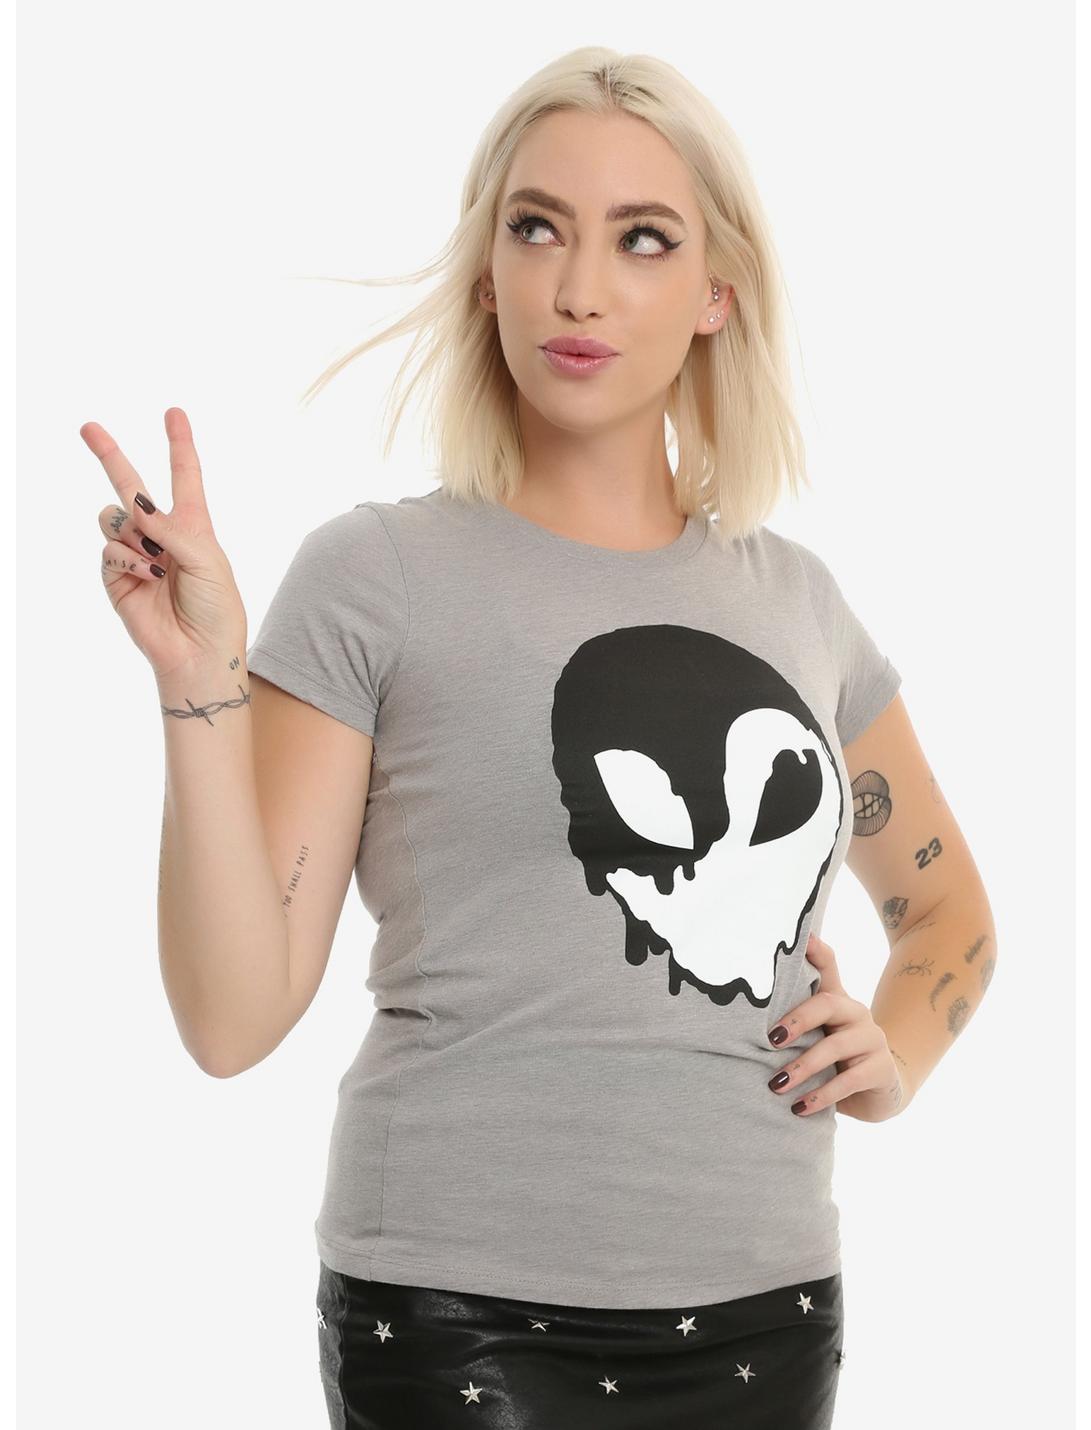 Yin-Yang Alien Girls T-Shirt, GREY, hi-res